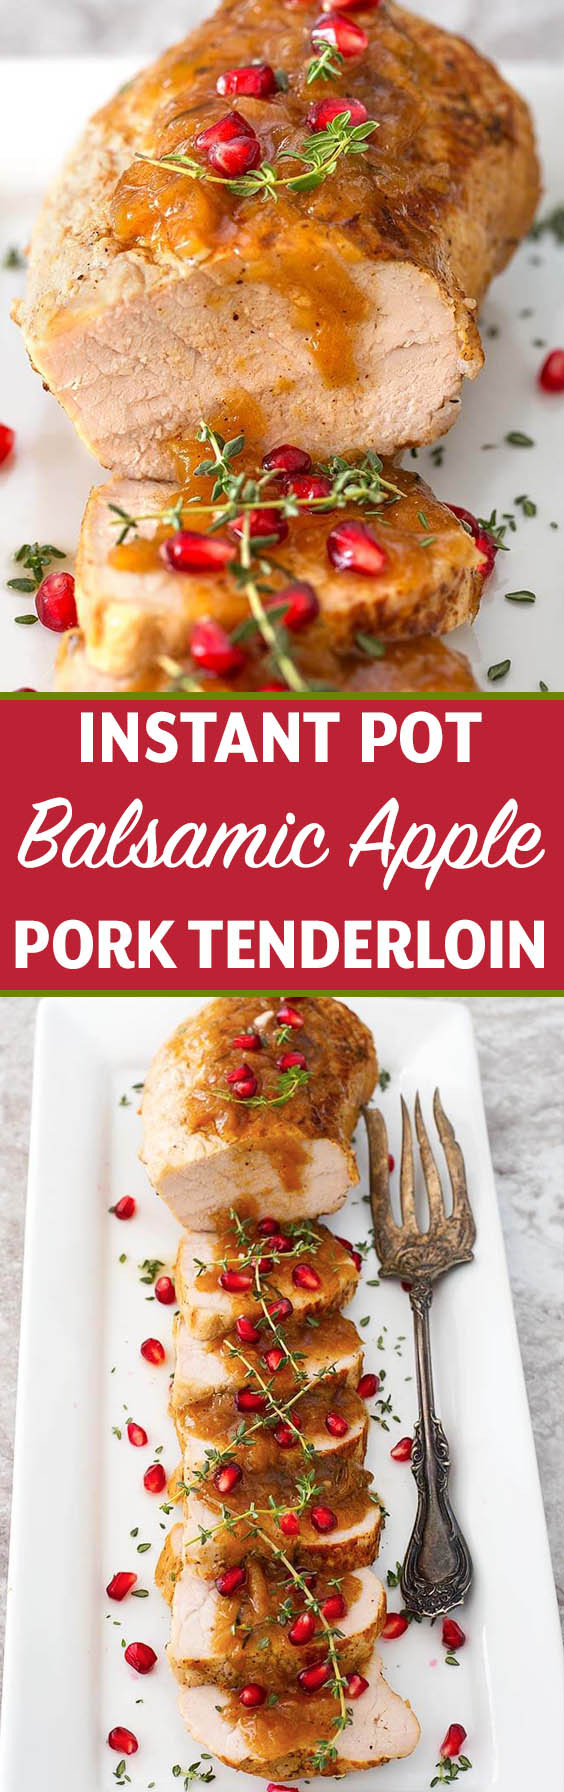 Easy Pork Tenderloin Instant Pot
 Instant Pot Balsamic Apple Pork Tenderloin